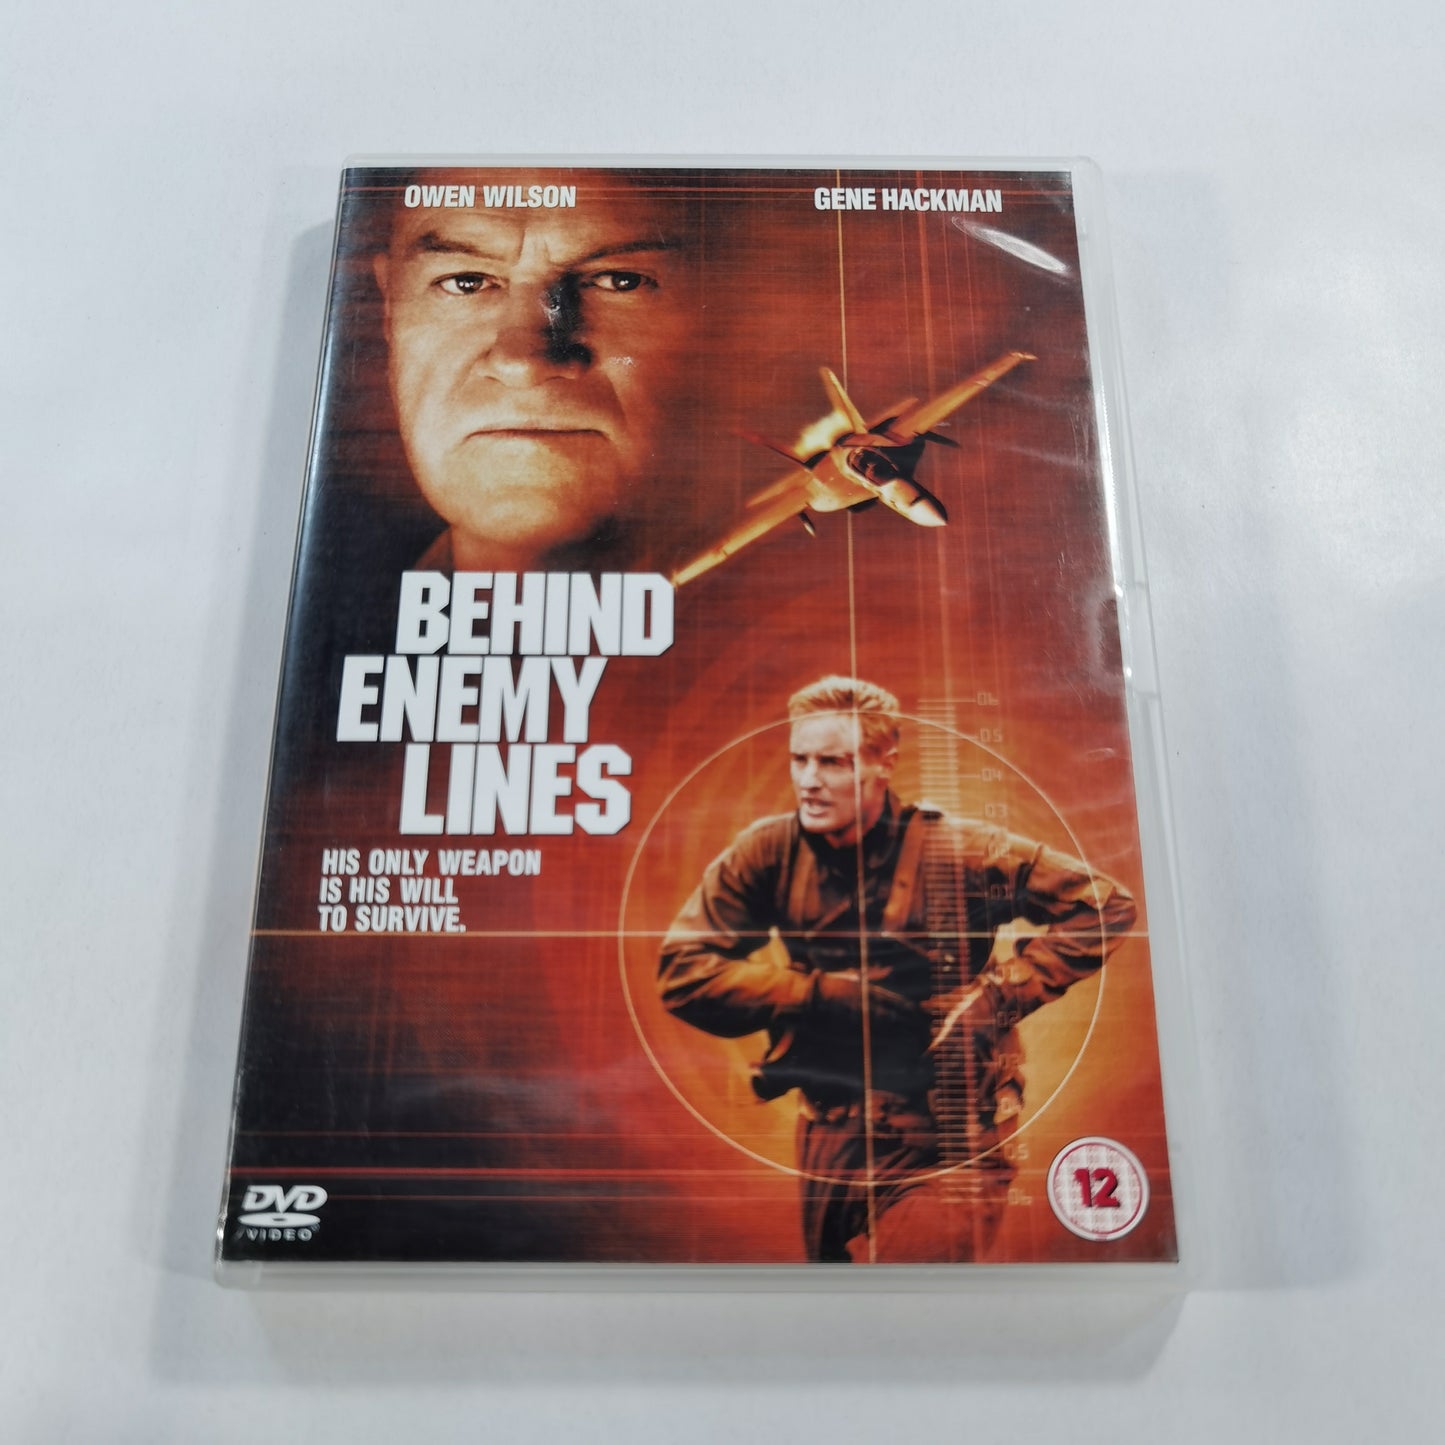 Behind Enemy Lines (2001) - DVD UK 2007